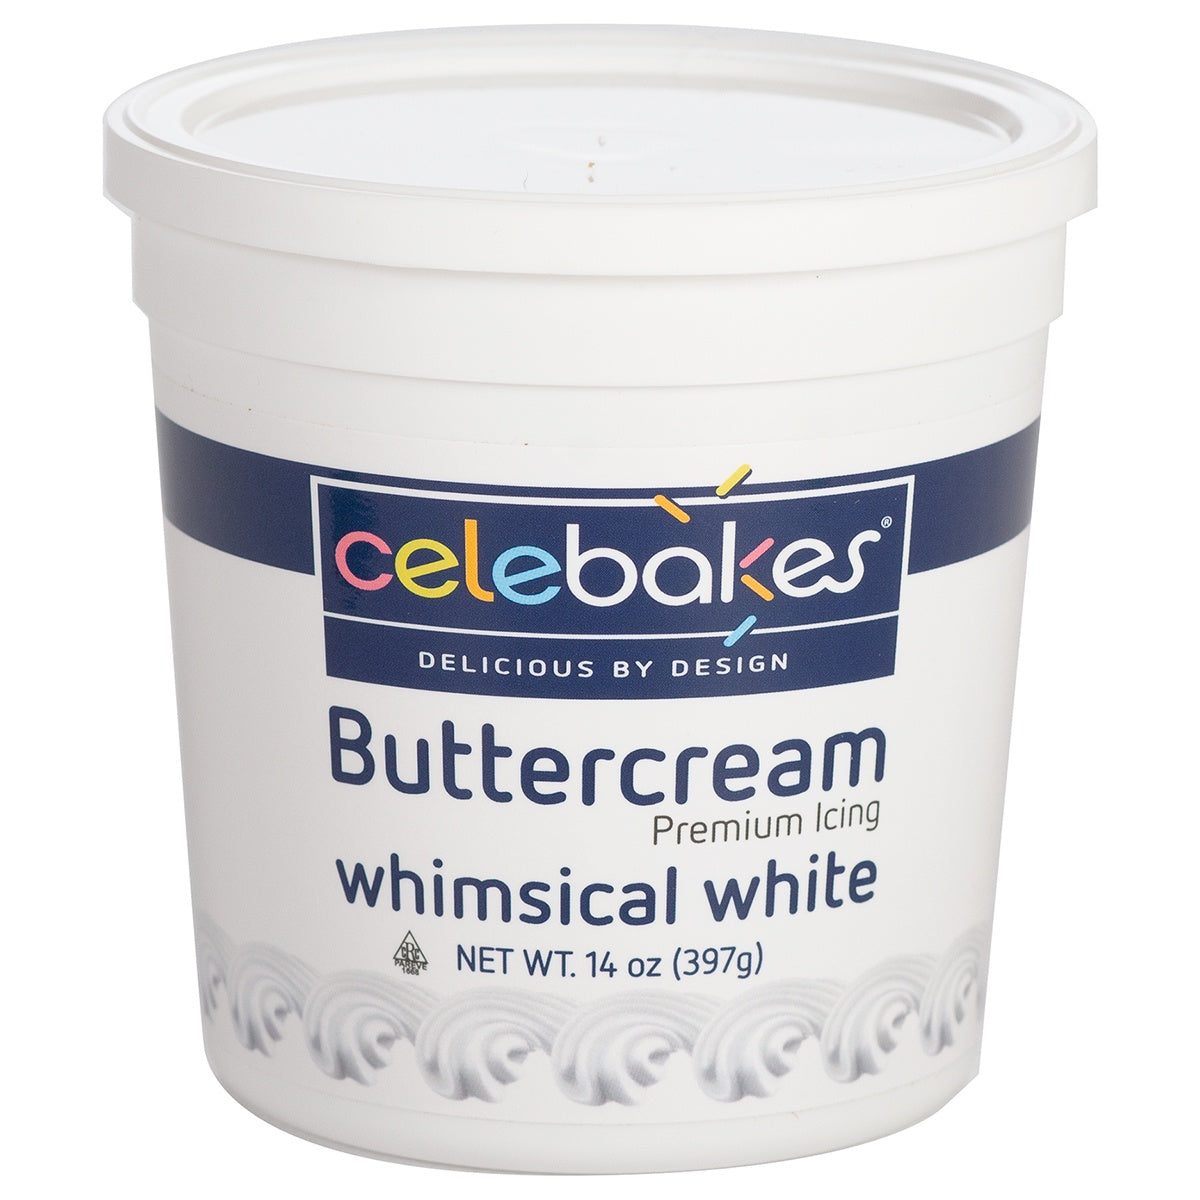 14oz Whimsical White Buttercream, Celebakes